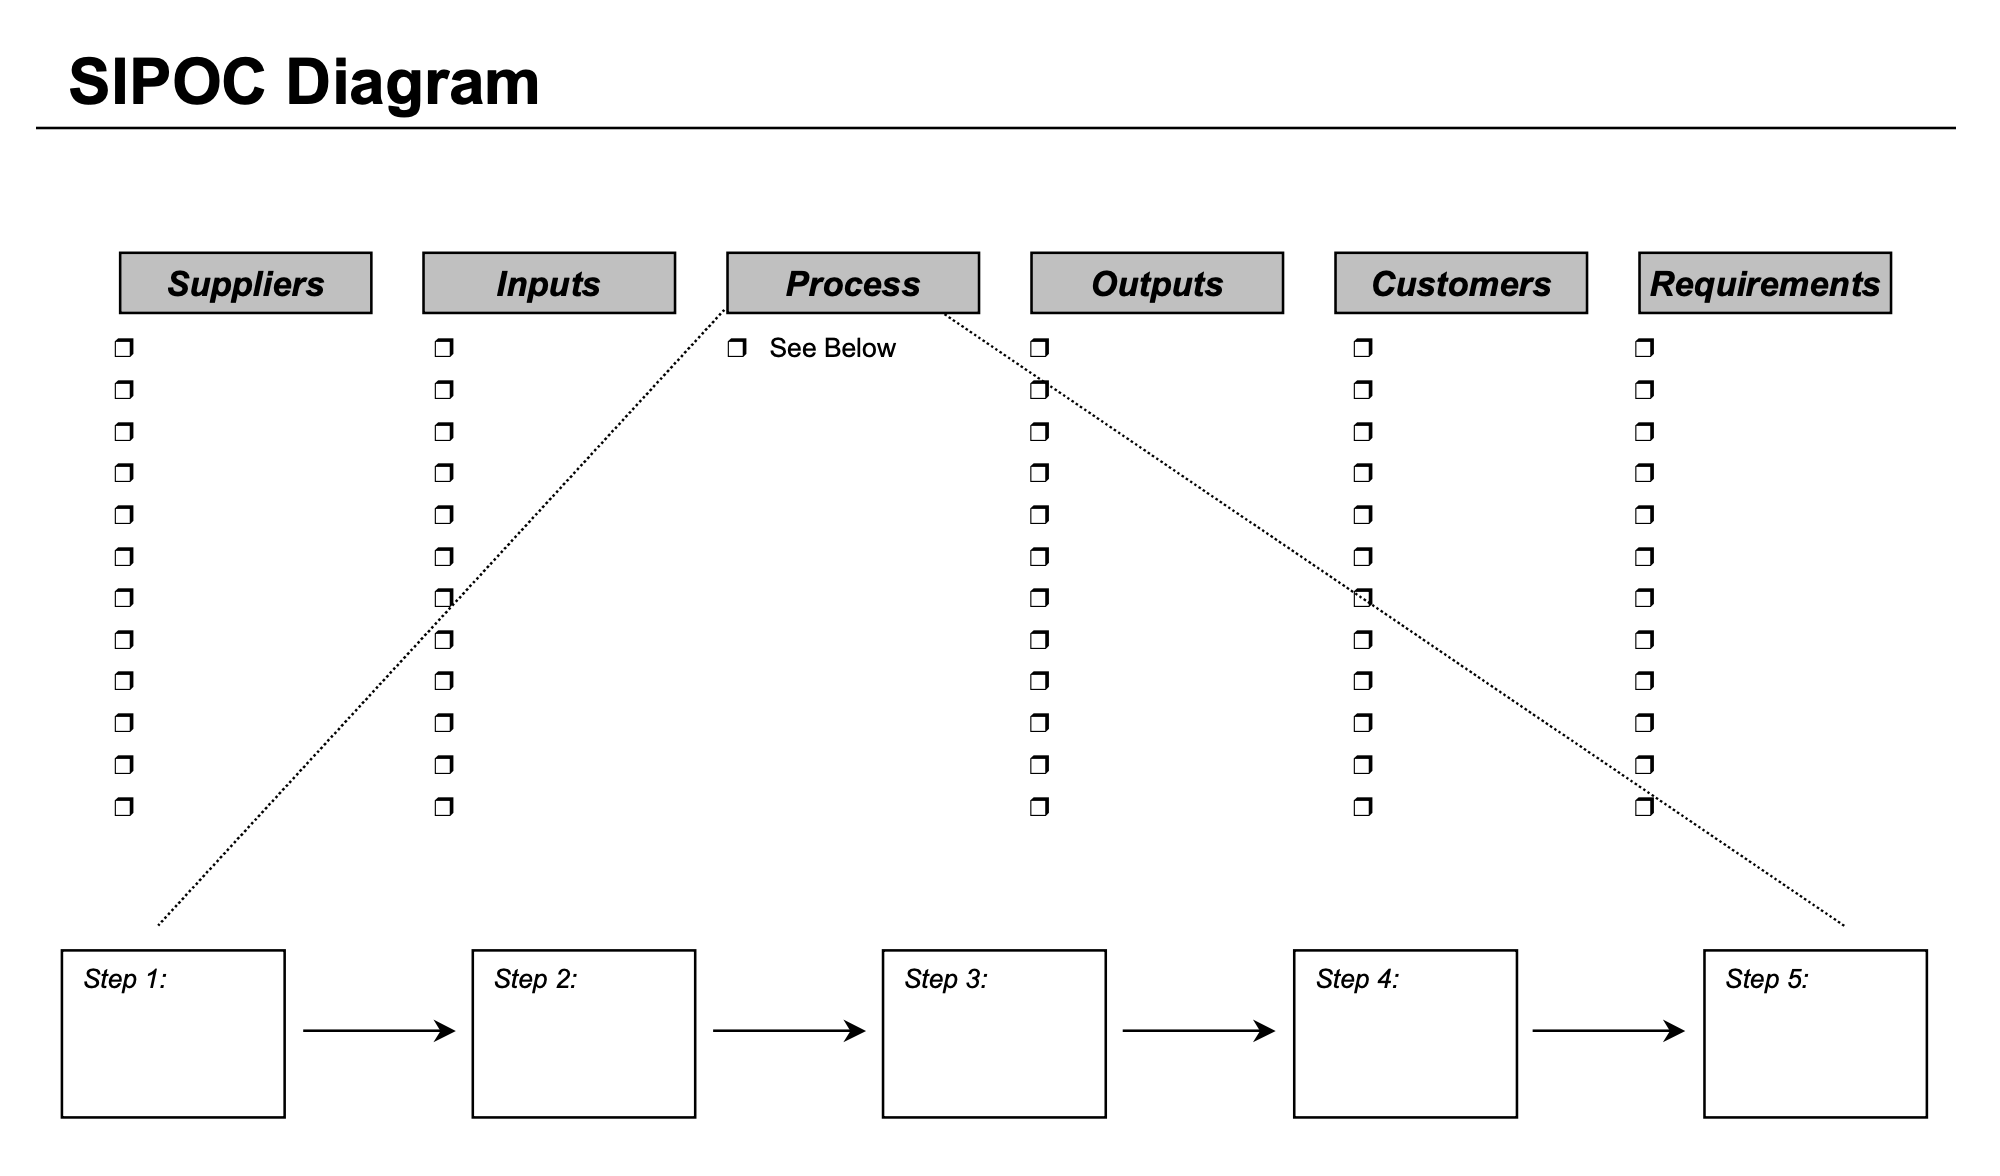 input process output diagram template